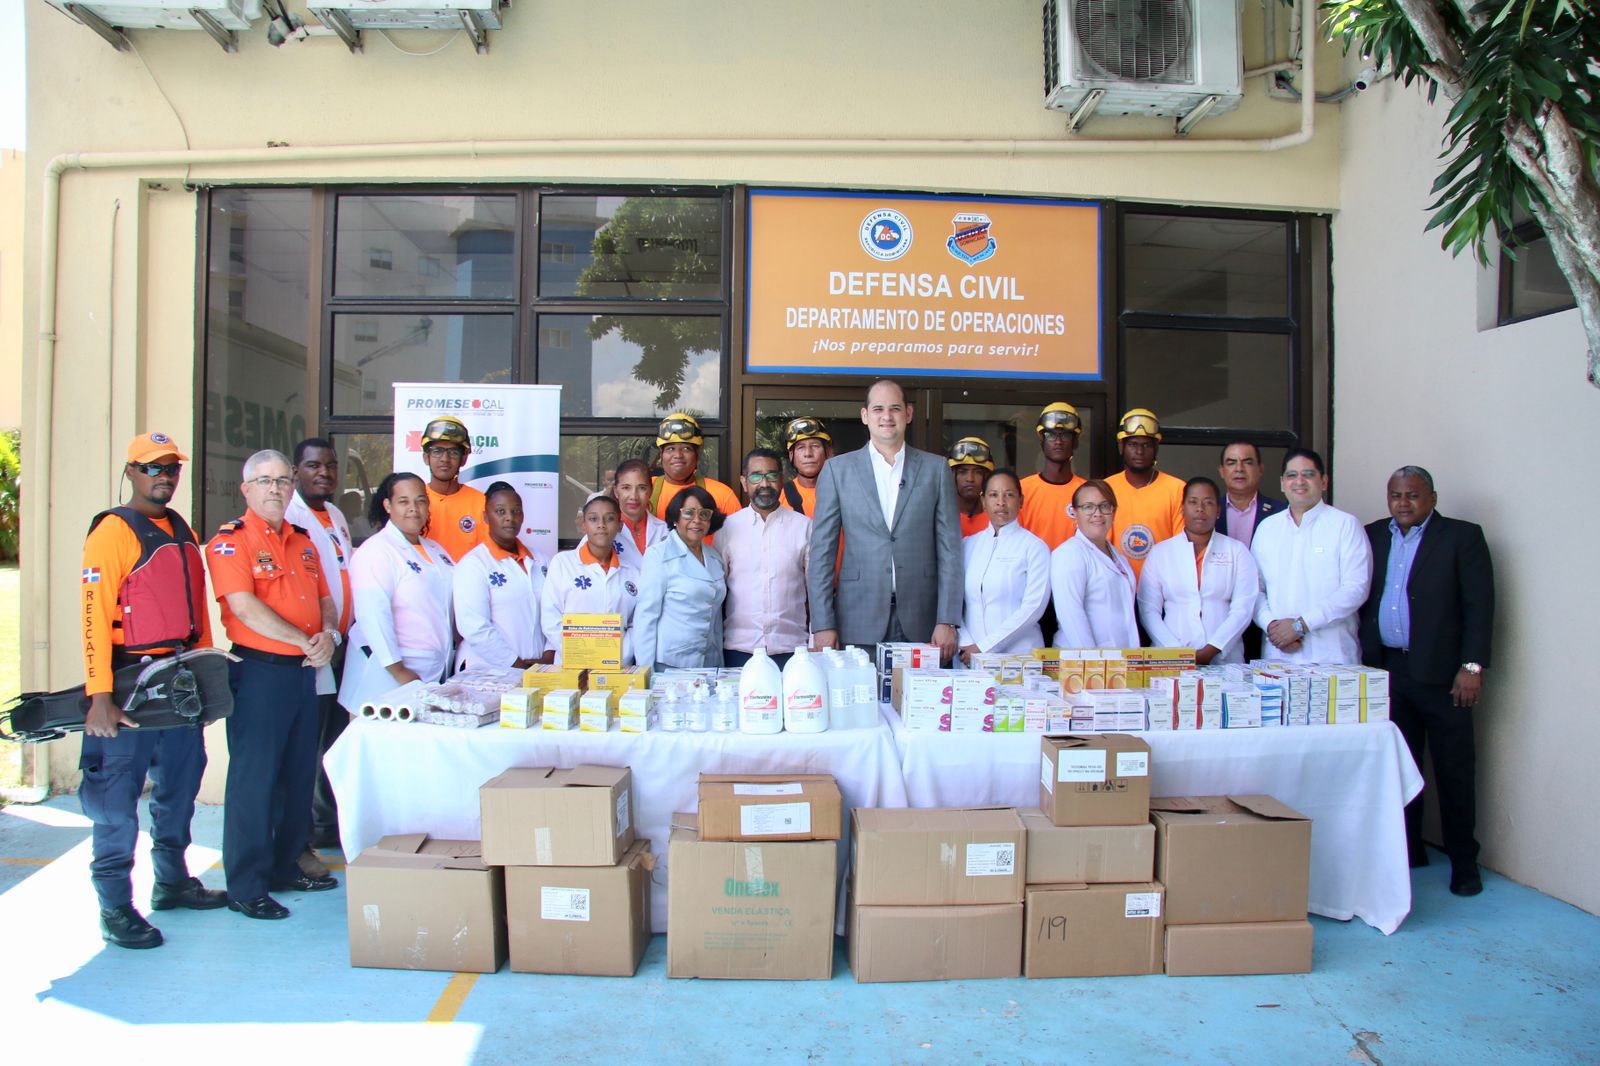 PROMESE/CAL entrega medicamentos para operativos de Semana Santa